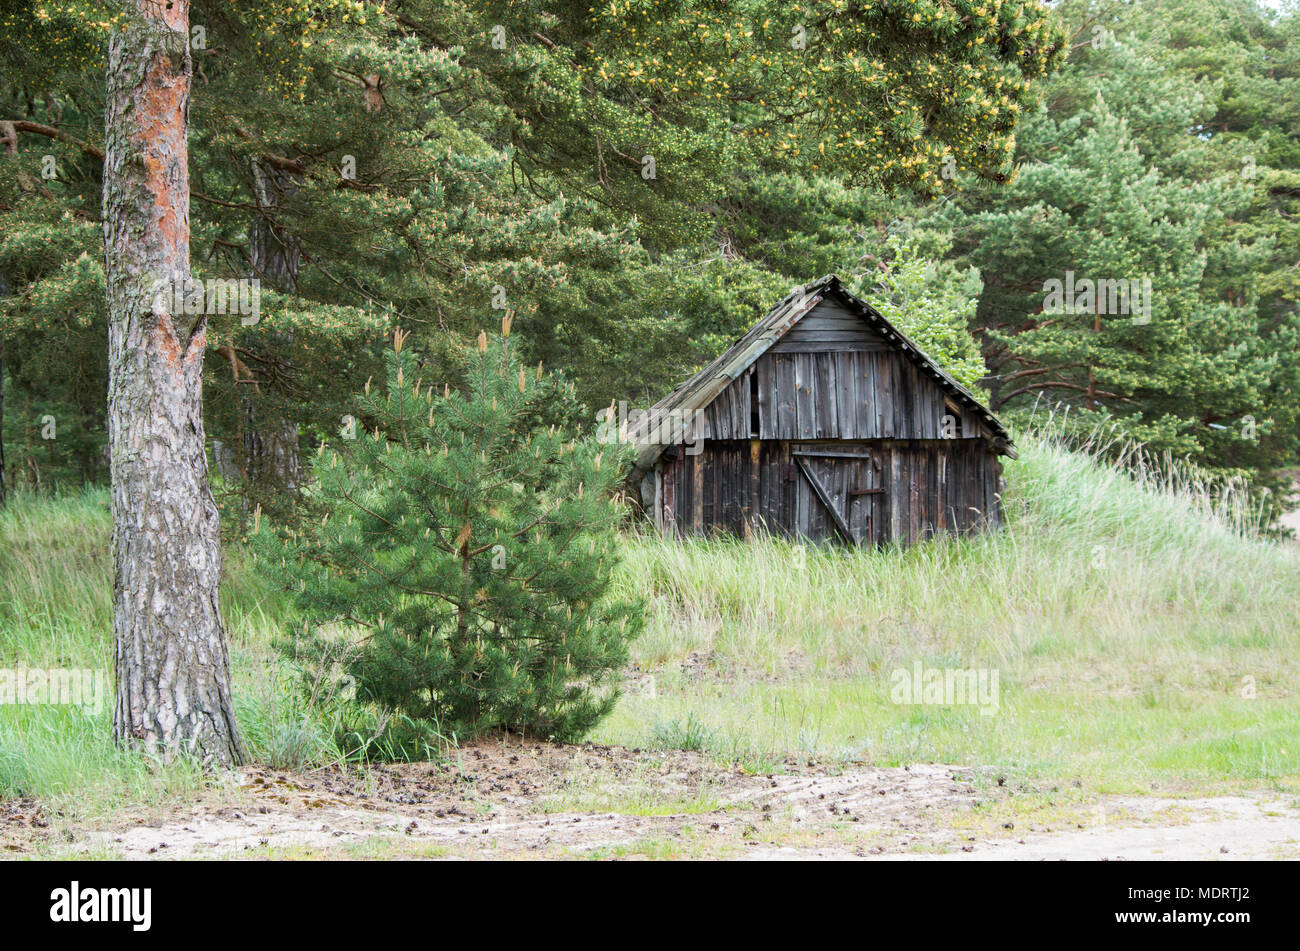 Una vecchia capanna in legno ricoperta da erba nella natura dell'isola estone di Prangli circondato da alberi di pino. Foto Stock